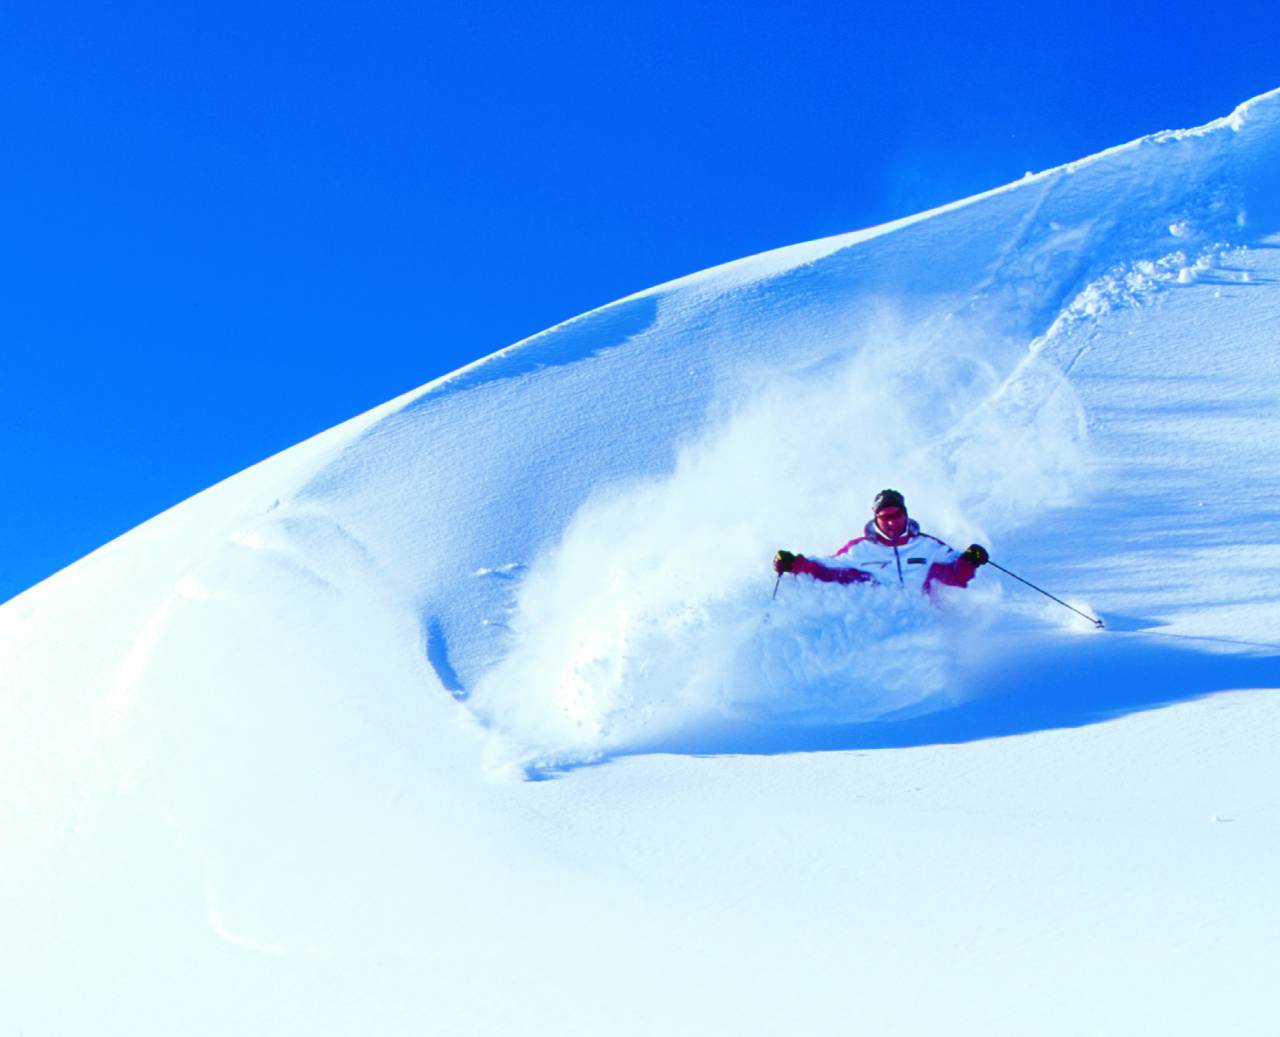 Skifahrer abseits der Skipiste im frischen Neuschnee bei wolkenlosem Himmel